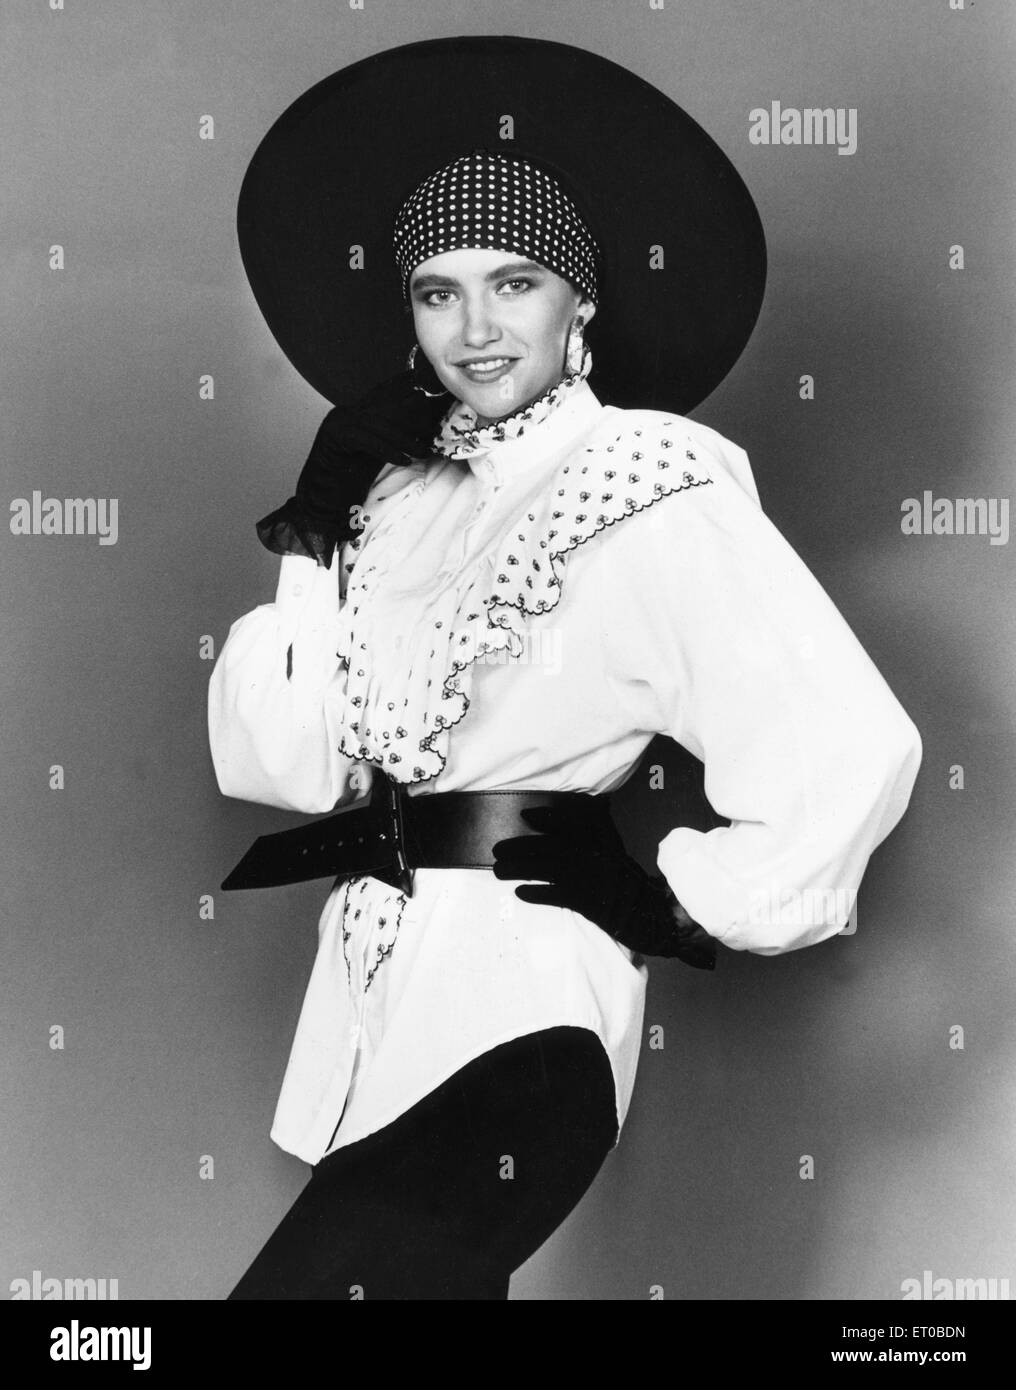 Années 1980 La mode féminine : Notre modèle porte. Collerette blanche blouse ceinturée guêtres noires, de gants et chapeau à large. 7 Août 1989 Banque D'Images